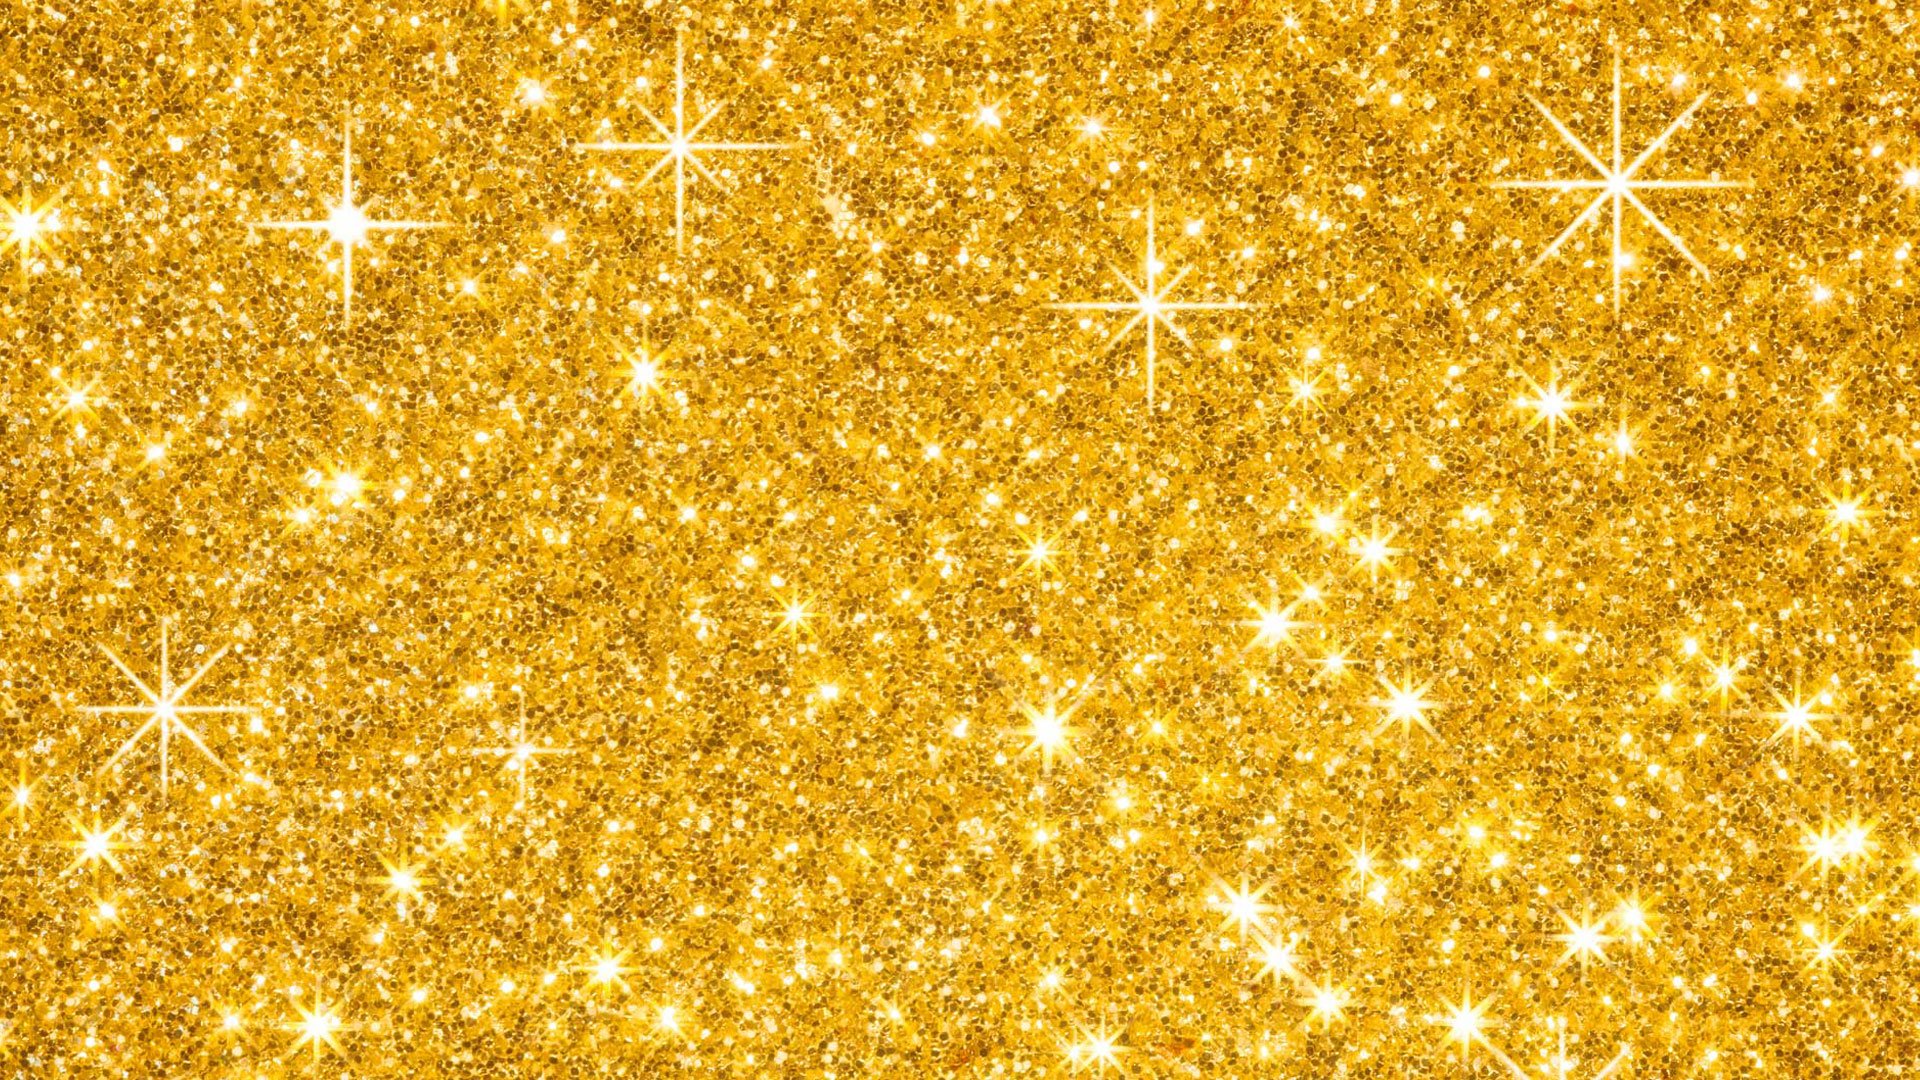 3488 3 خلفيات ذهبية - اروع خلفيات باللون الذهبي بريئة ثابتة